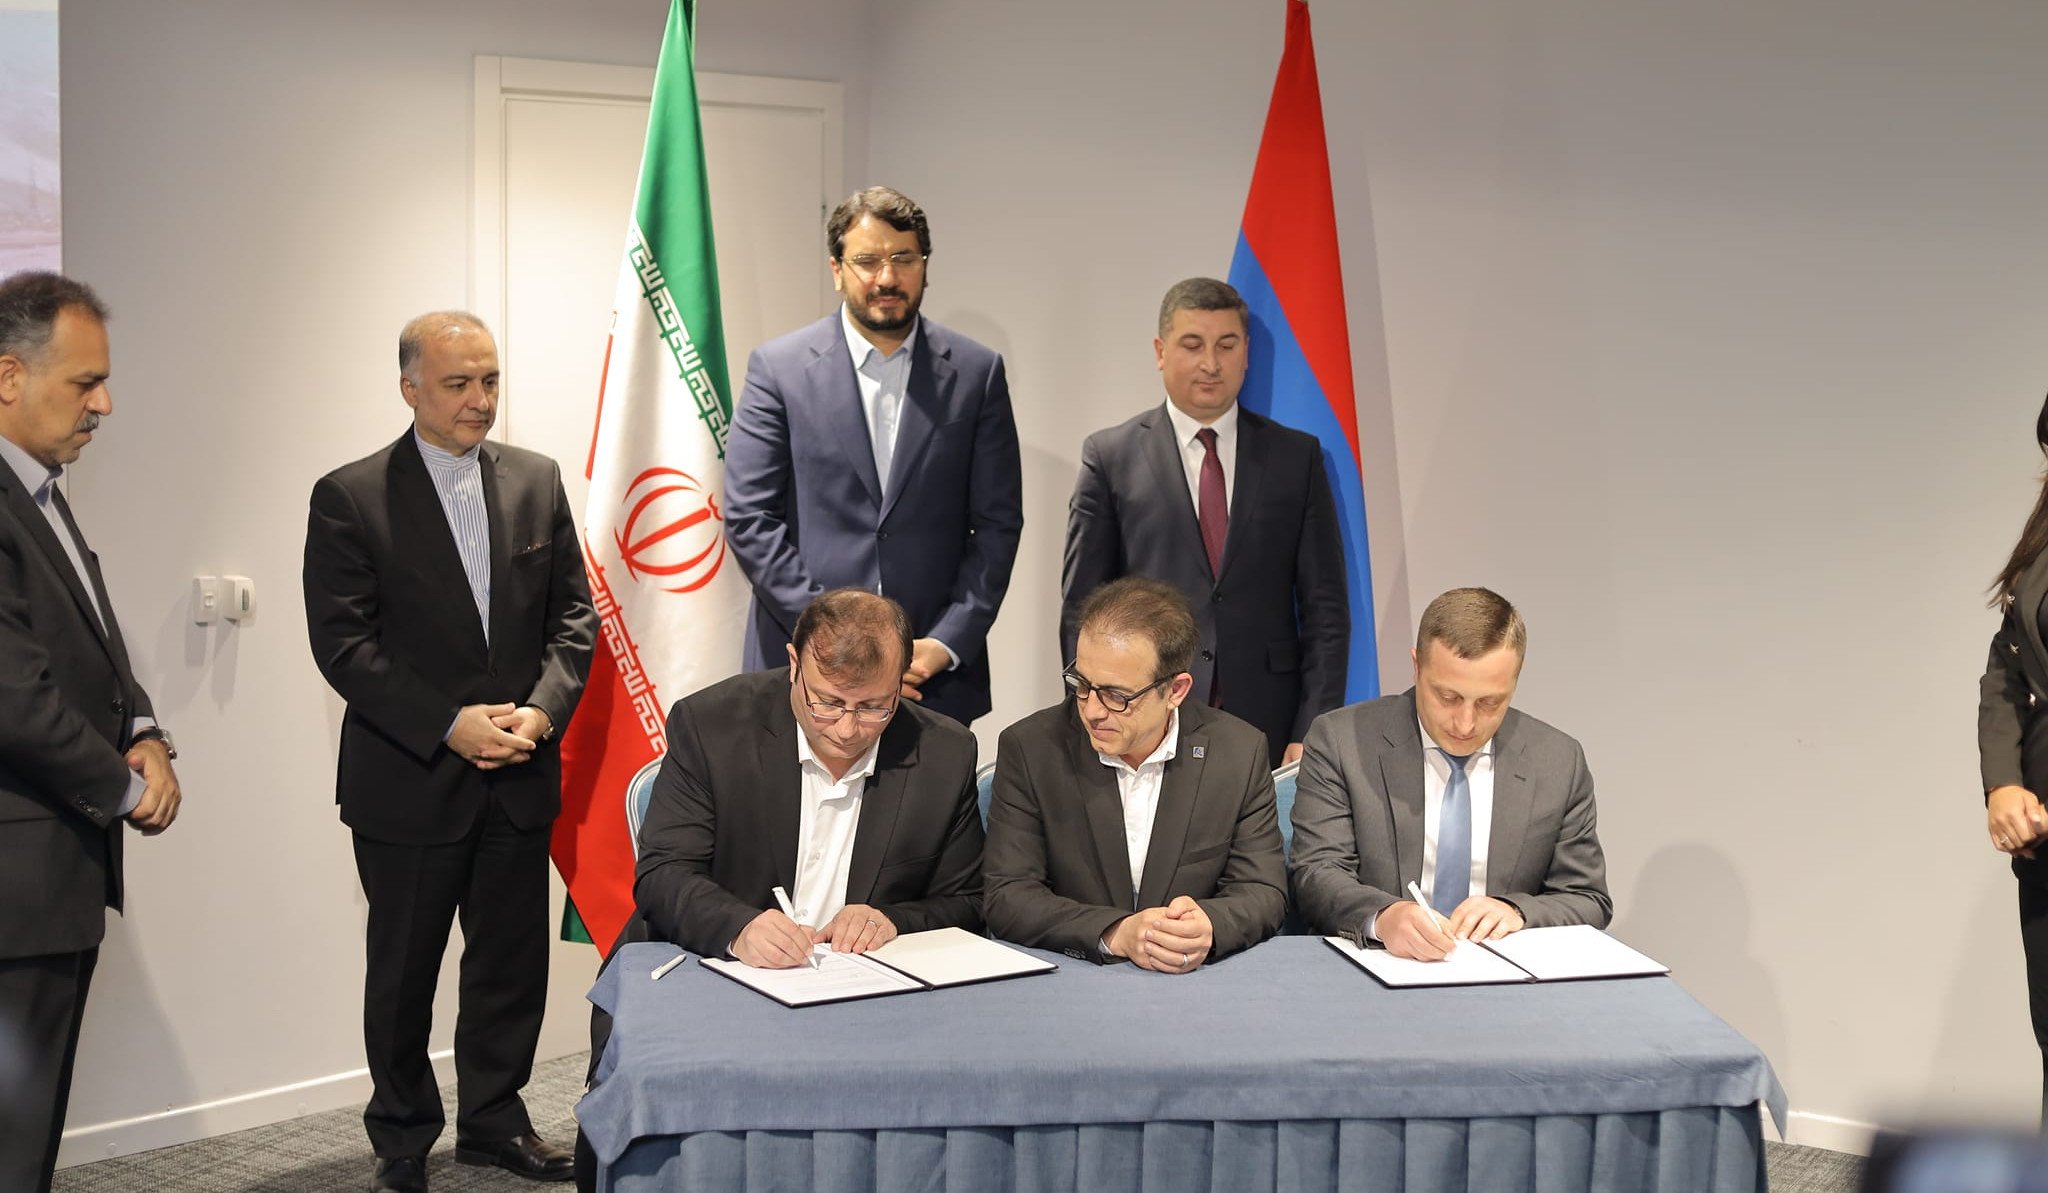 Հայաստանի և Իրանի միջև ստորագրվեց Հյուսիս-Հարավ միջանցքի ներդրումային ծրագրի փաստաթուղթ՝ Ագարակ-Քաջարան 32 կմ երկարությամբ ճանապարհահատվածի շինարարության պայմանագիրը